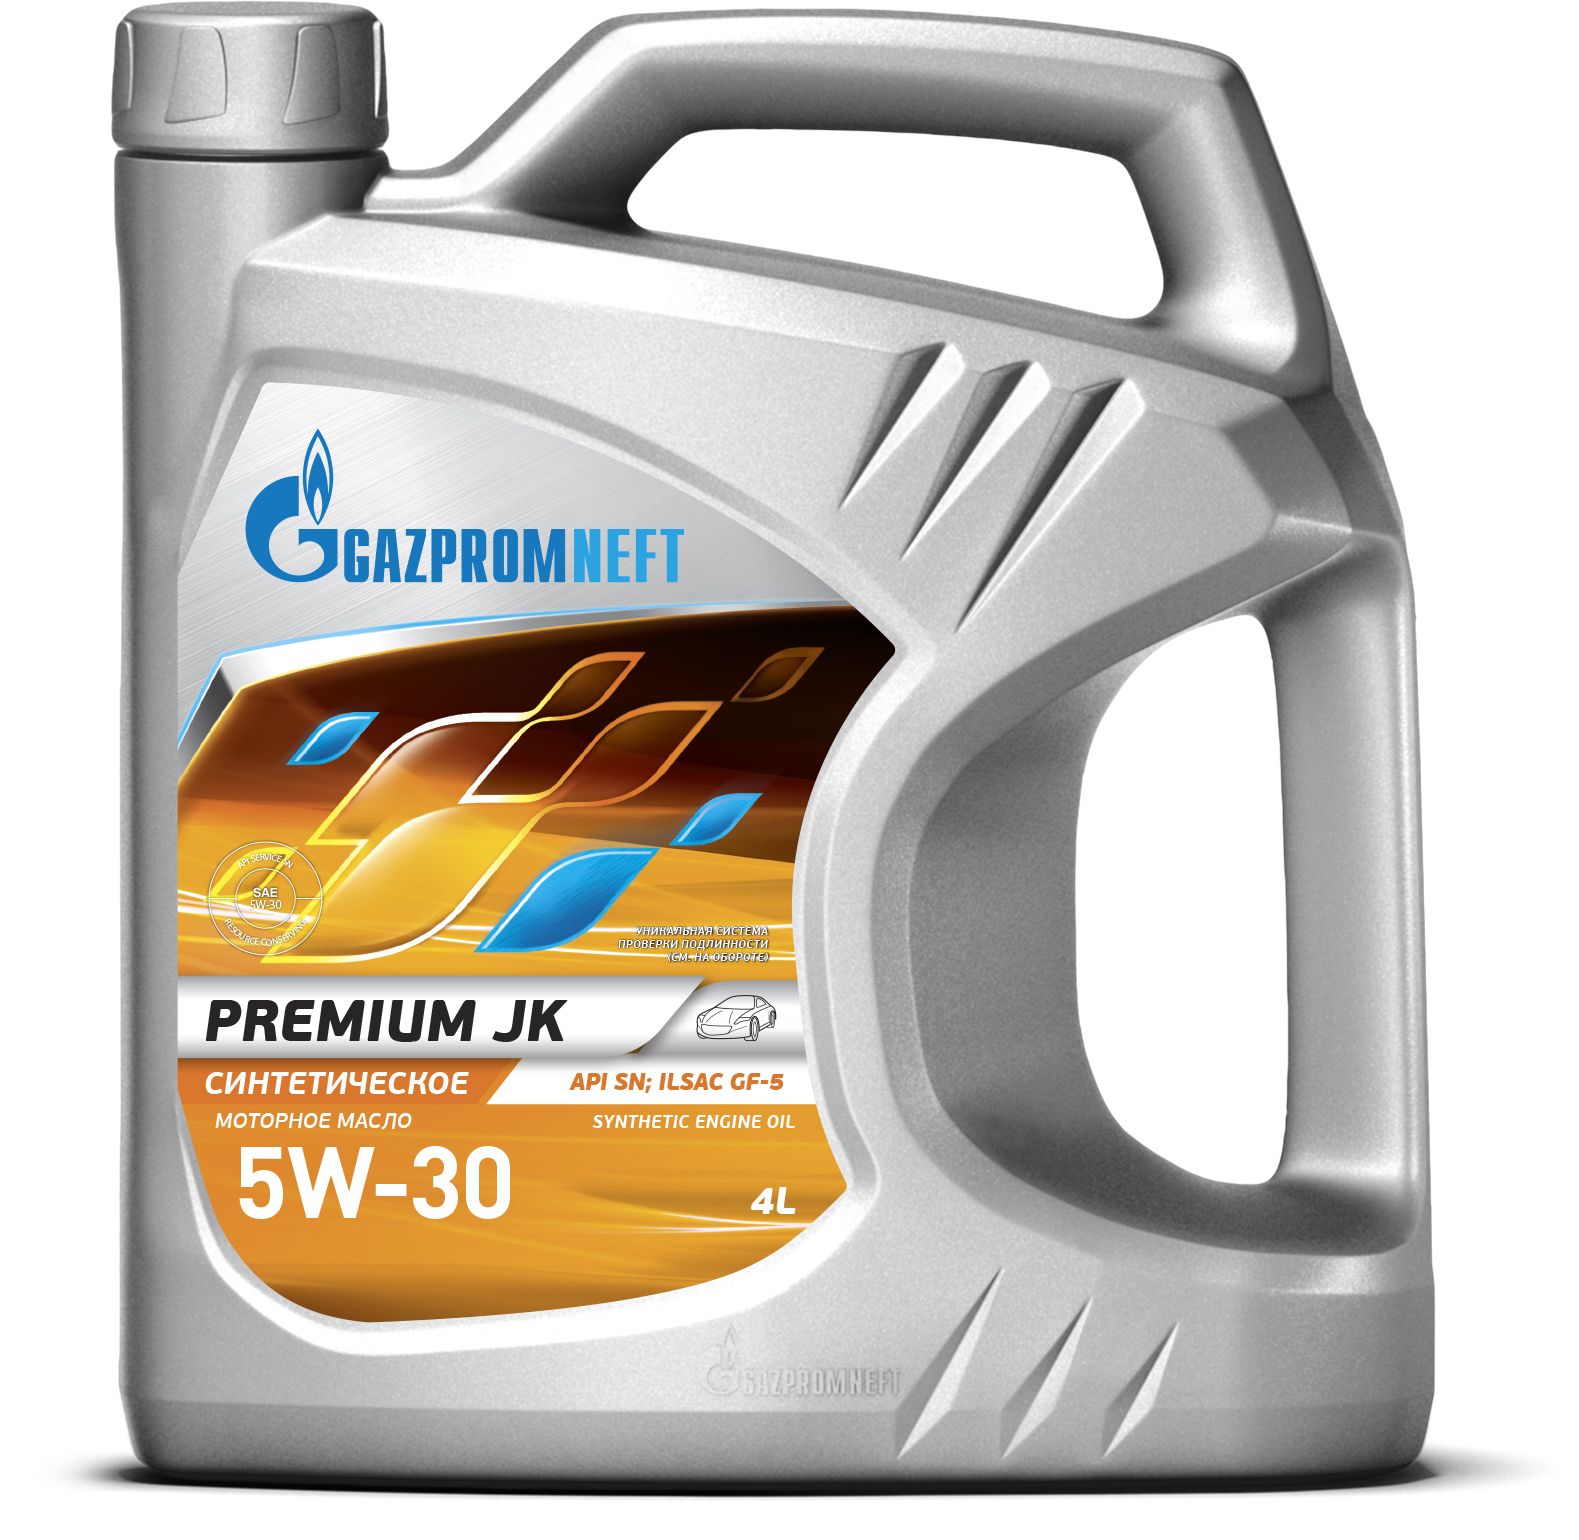 Моторное масло api sf. Gazpromneft Premium n 5w40 4л. Gazpromneft Premium JK 5w-30. Gazpromneft масло Premium l 10w-40 4л.